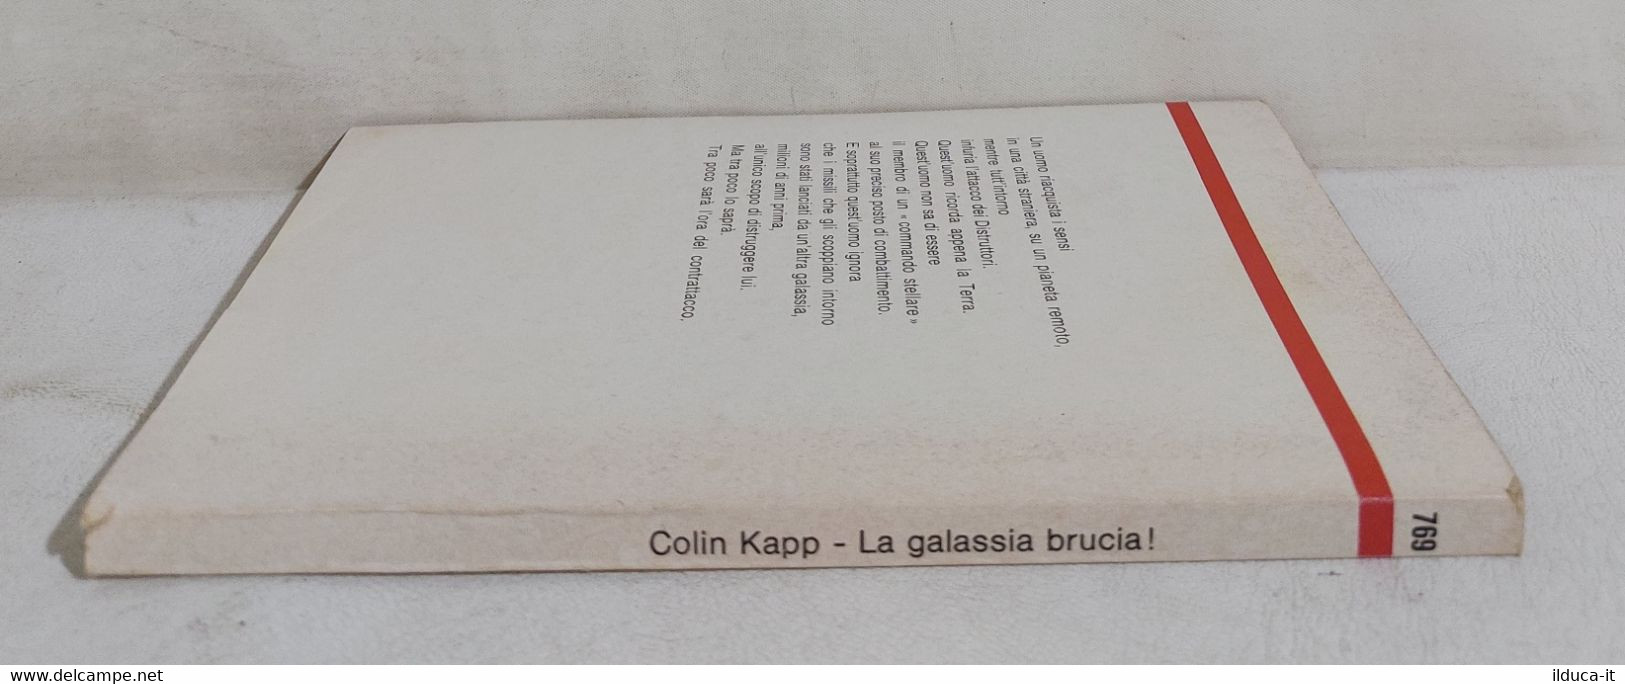 I111767 Urania N. 769 - Colin Kapp - La Galassia Brucia! - Mondadori 1979 - Fantascienza E Fantasia